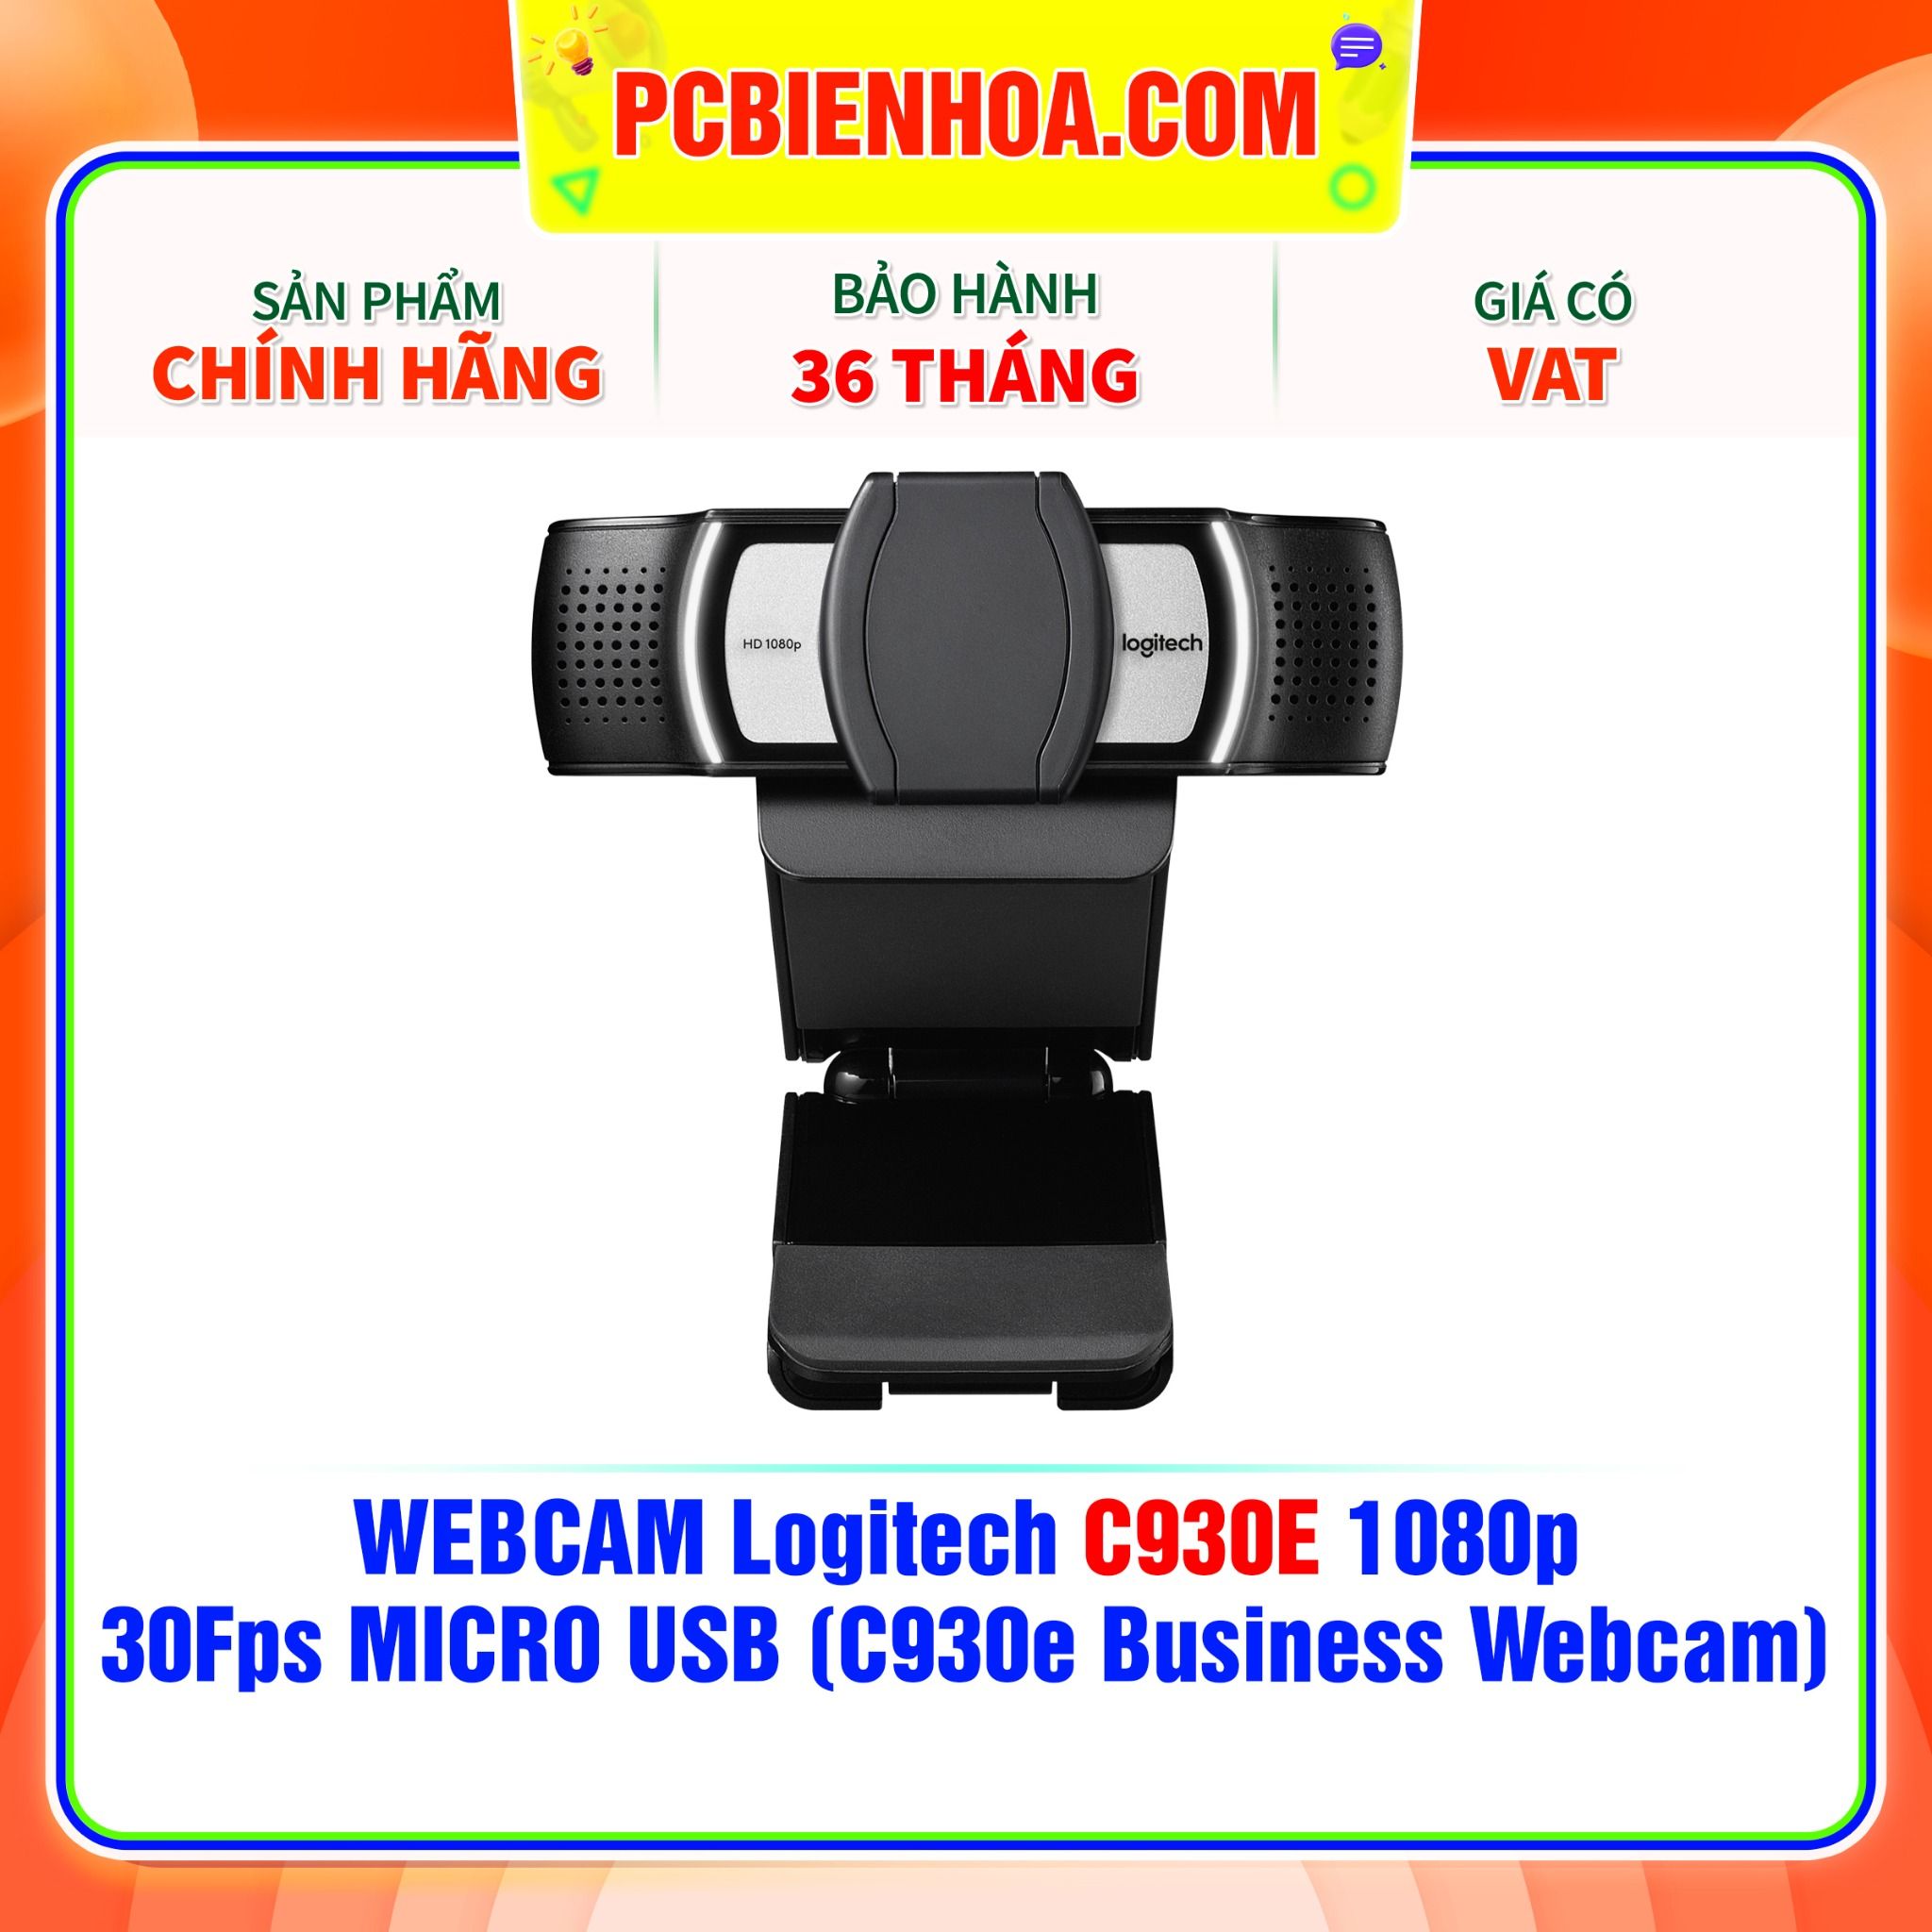  Thiết Bị Truyền Hình Ảnh - Webcam Logitech C930E 1080p (C930e Business Webcam) 